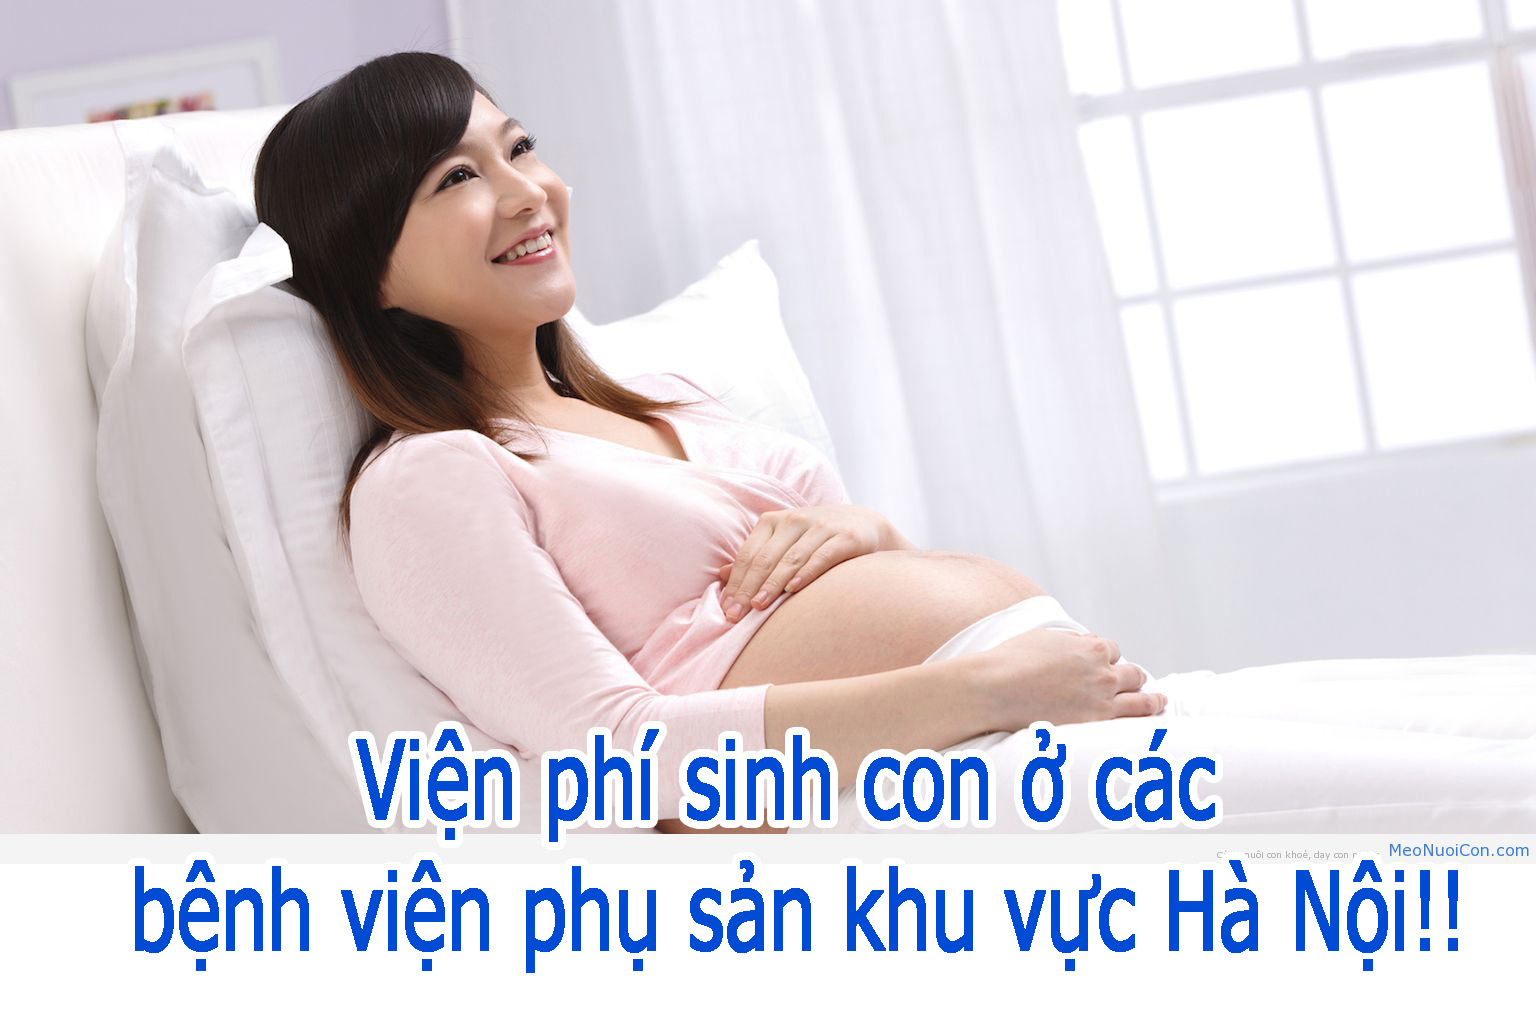 Bách khoa phụ nữ mang thai  Kinh nghiệm làm hồ sơ sinh của ad ở bệnh viện  Việt  Nhật BV bạch mai cho mẹ nào quan tâm nhé  cuối